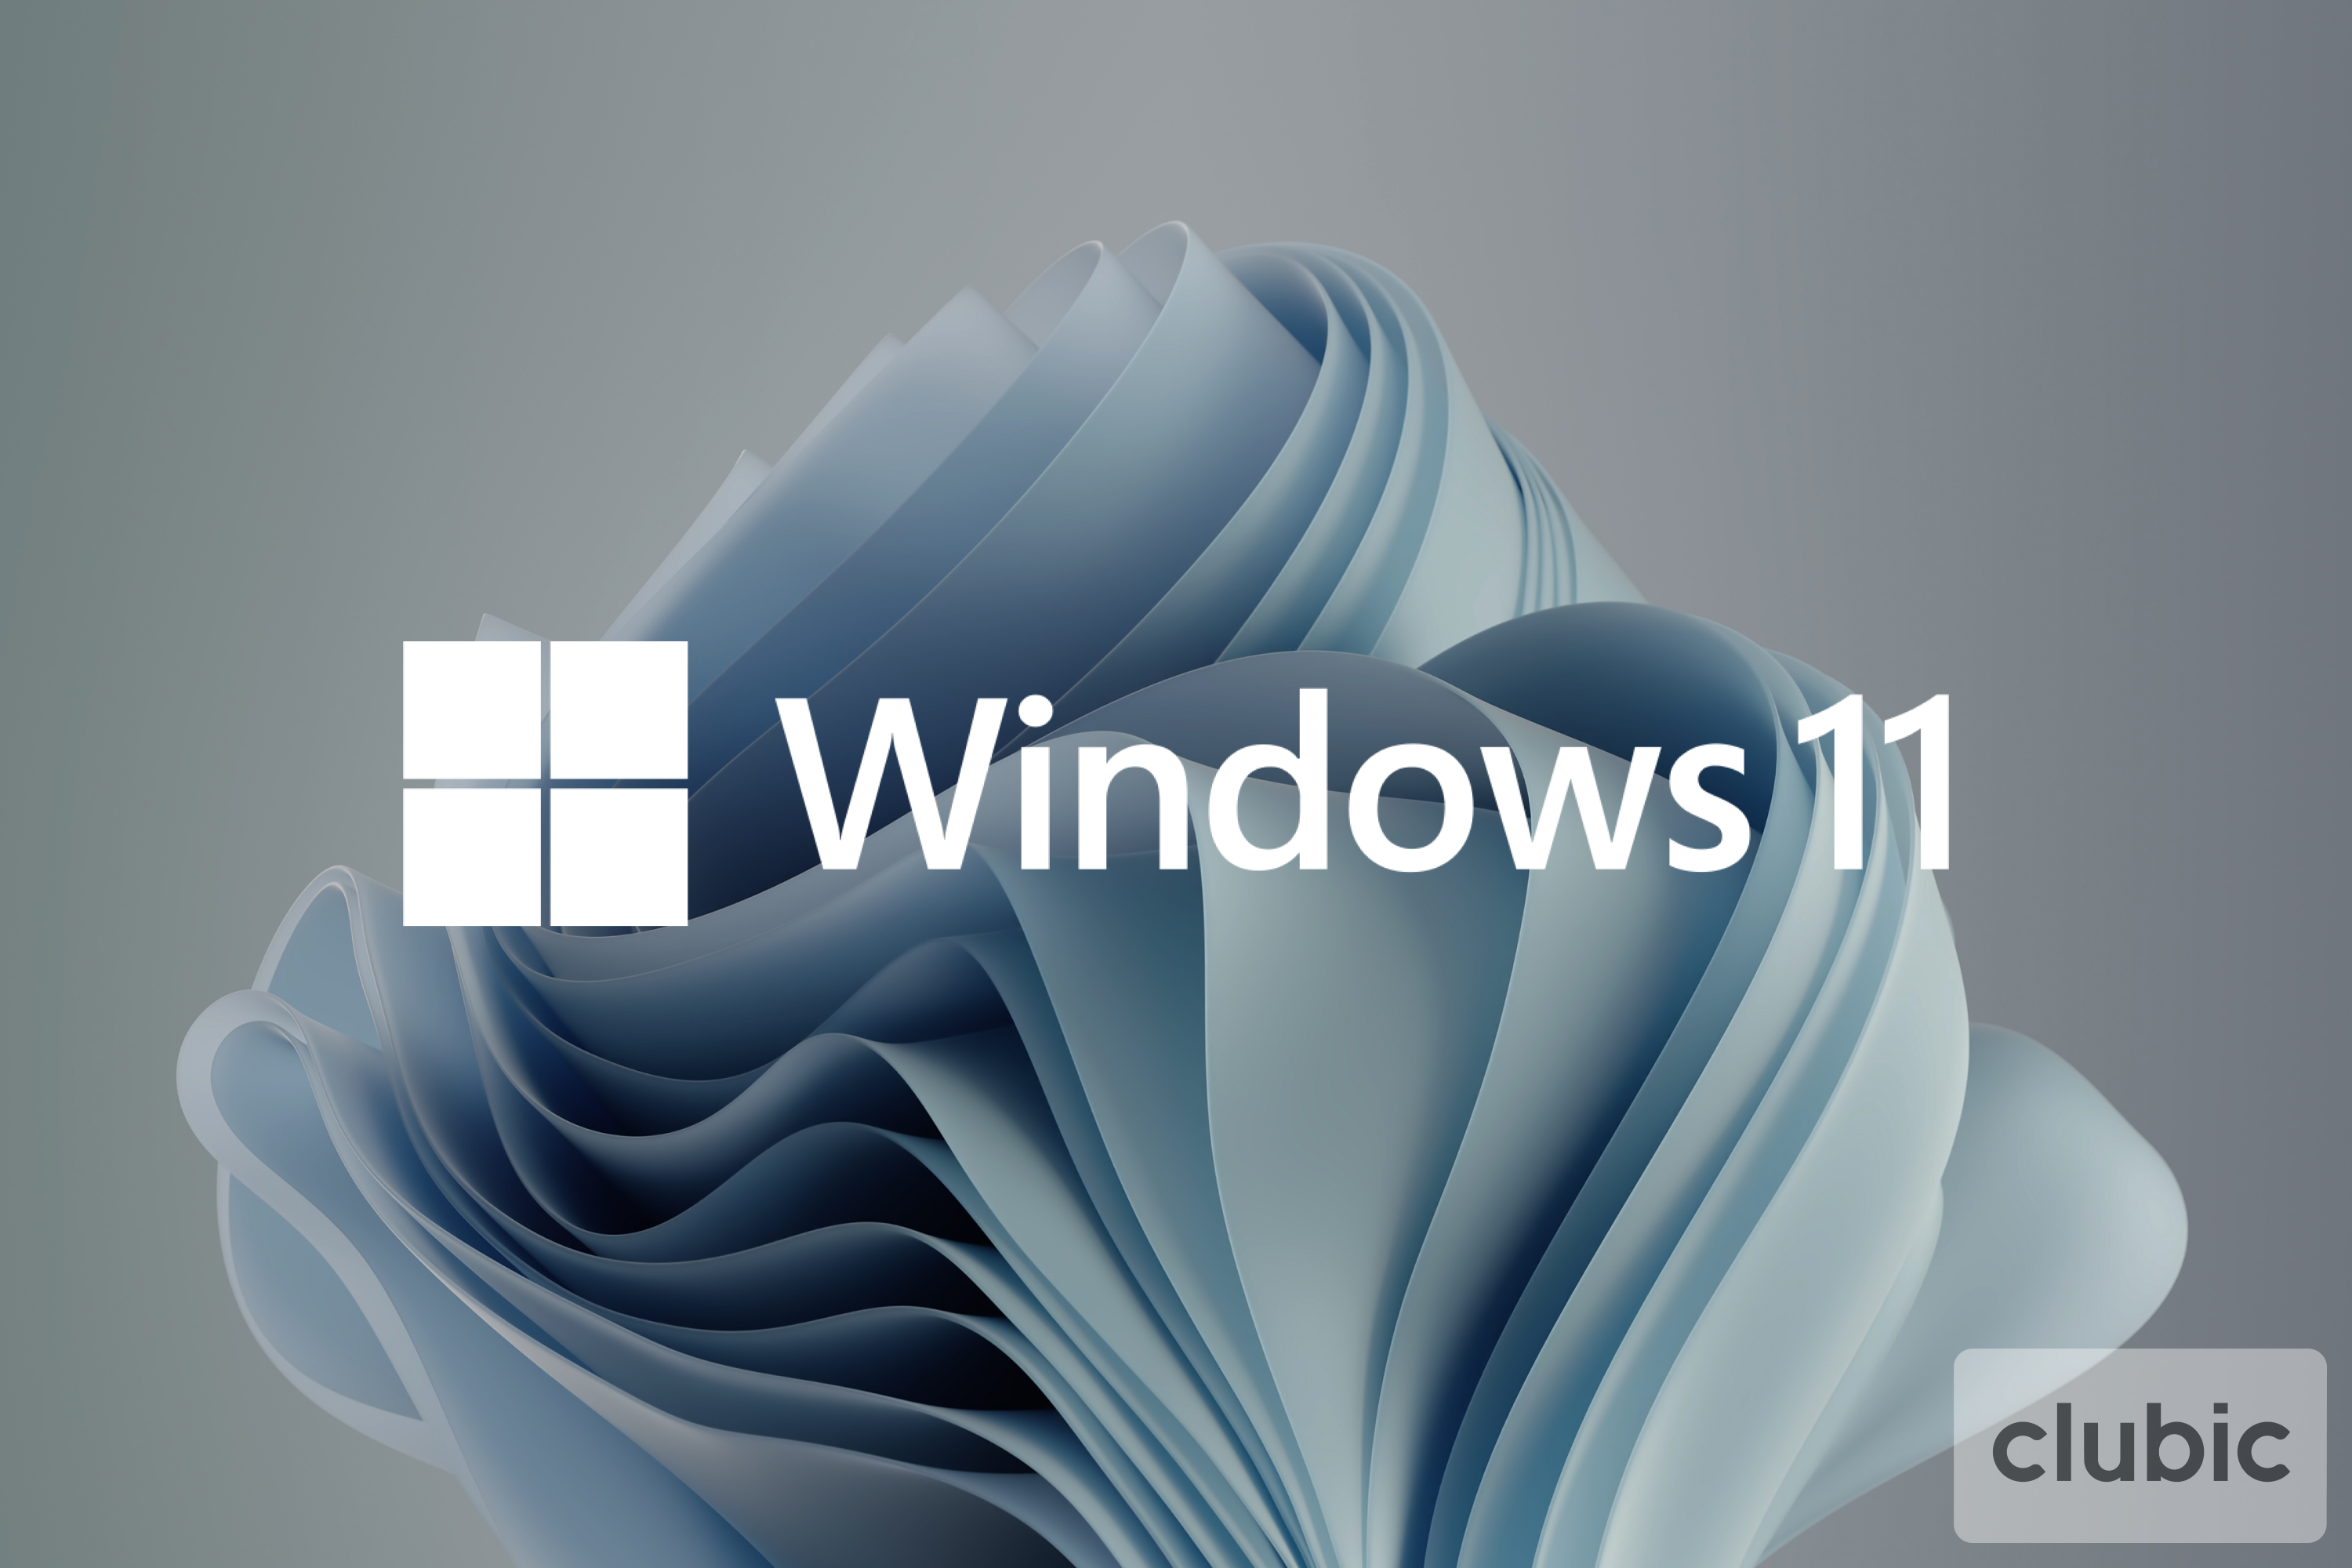 Microsoft corrige enfin le bug de Windows 11 qui provoquait des ralentissements pour les possesseurs de SSD